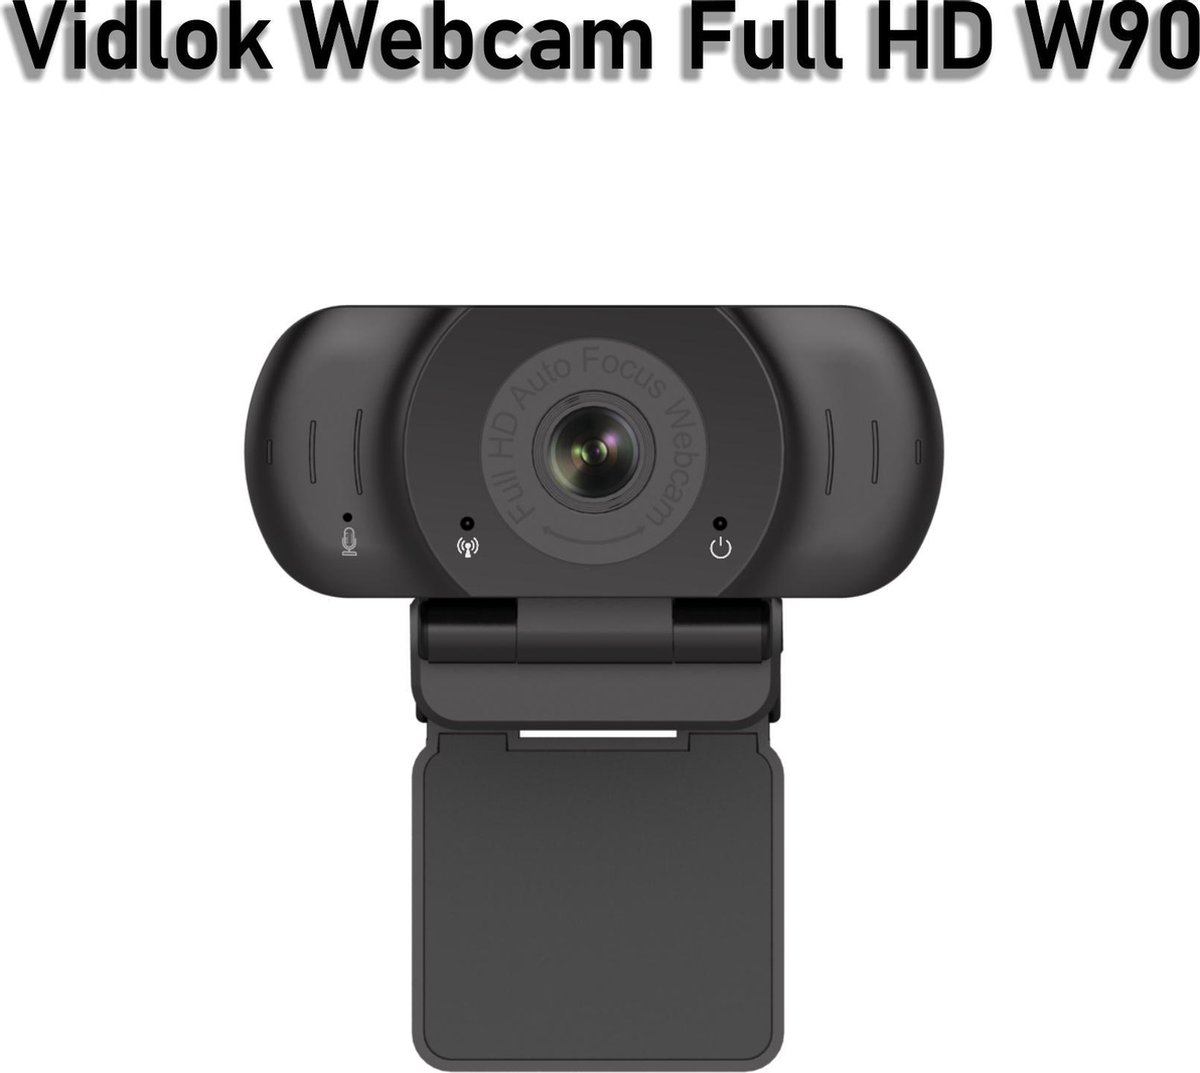 Vidlok W90 Full HD 1080P Webcam - Auto Focus - Noise Cancelling